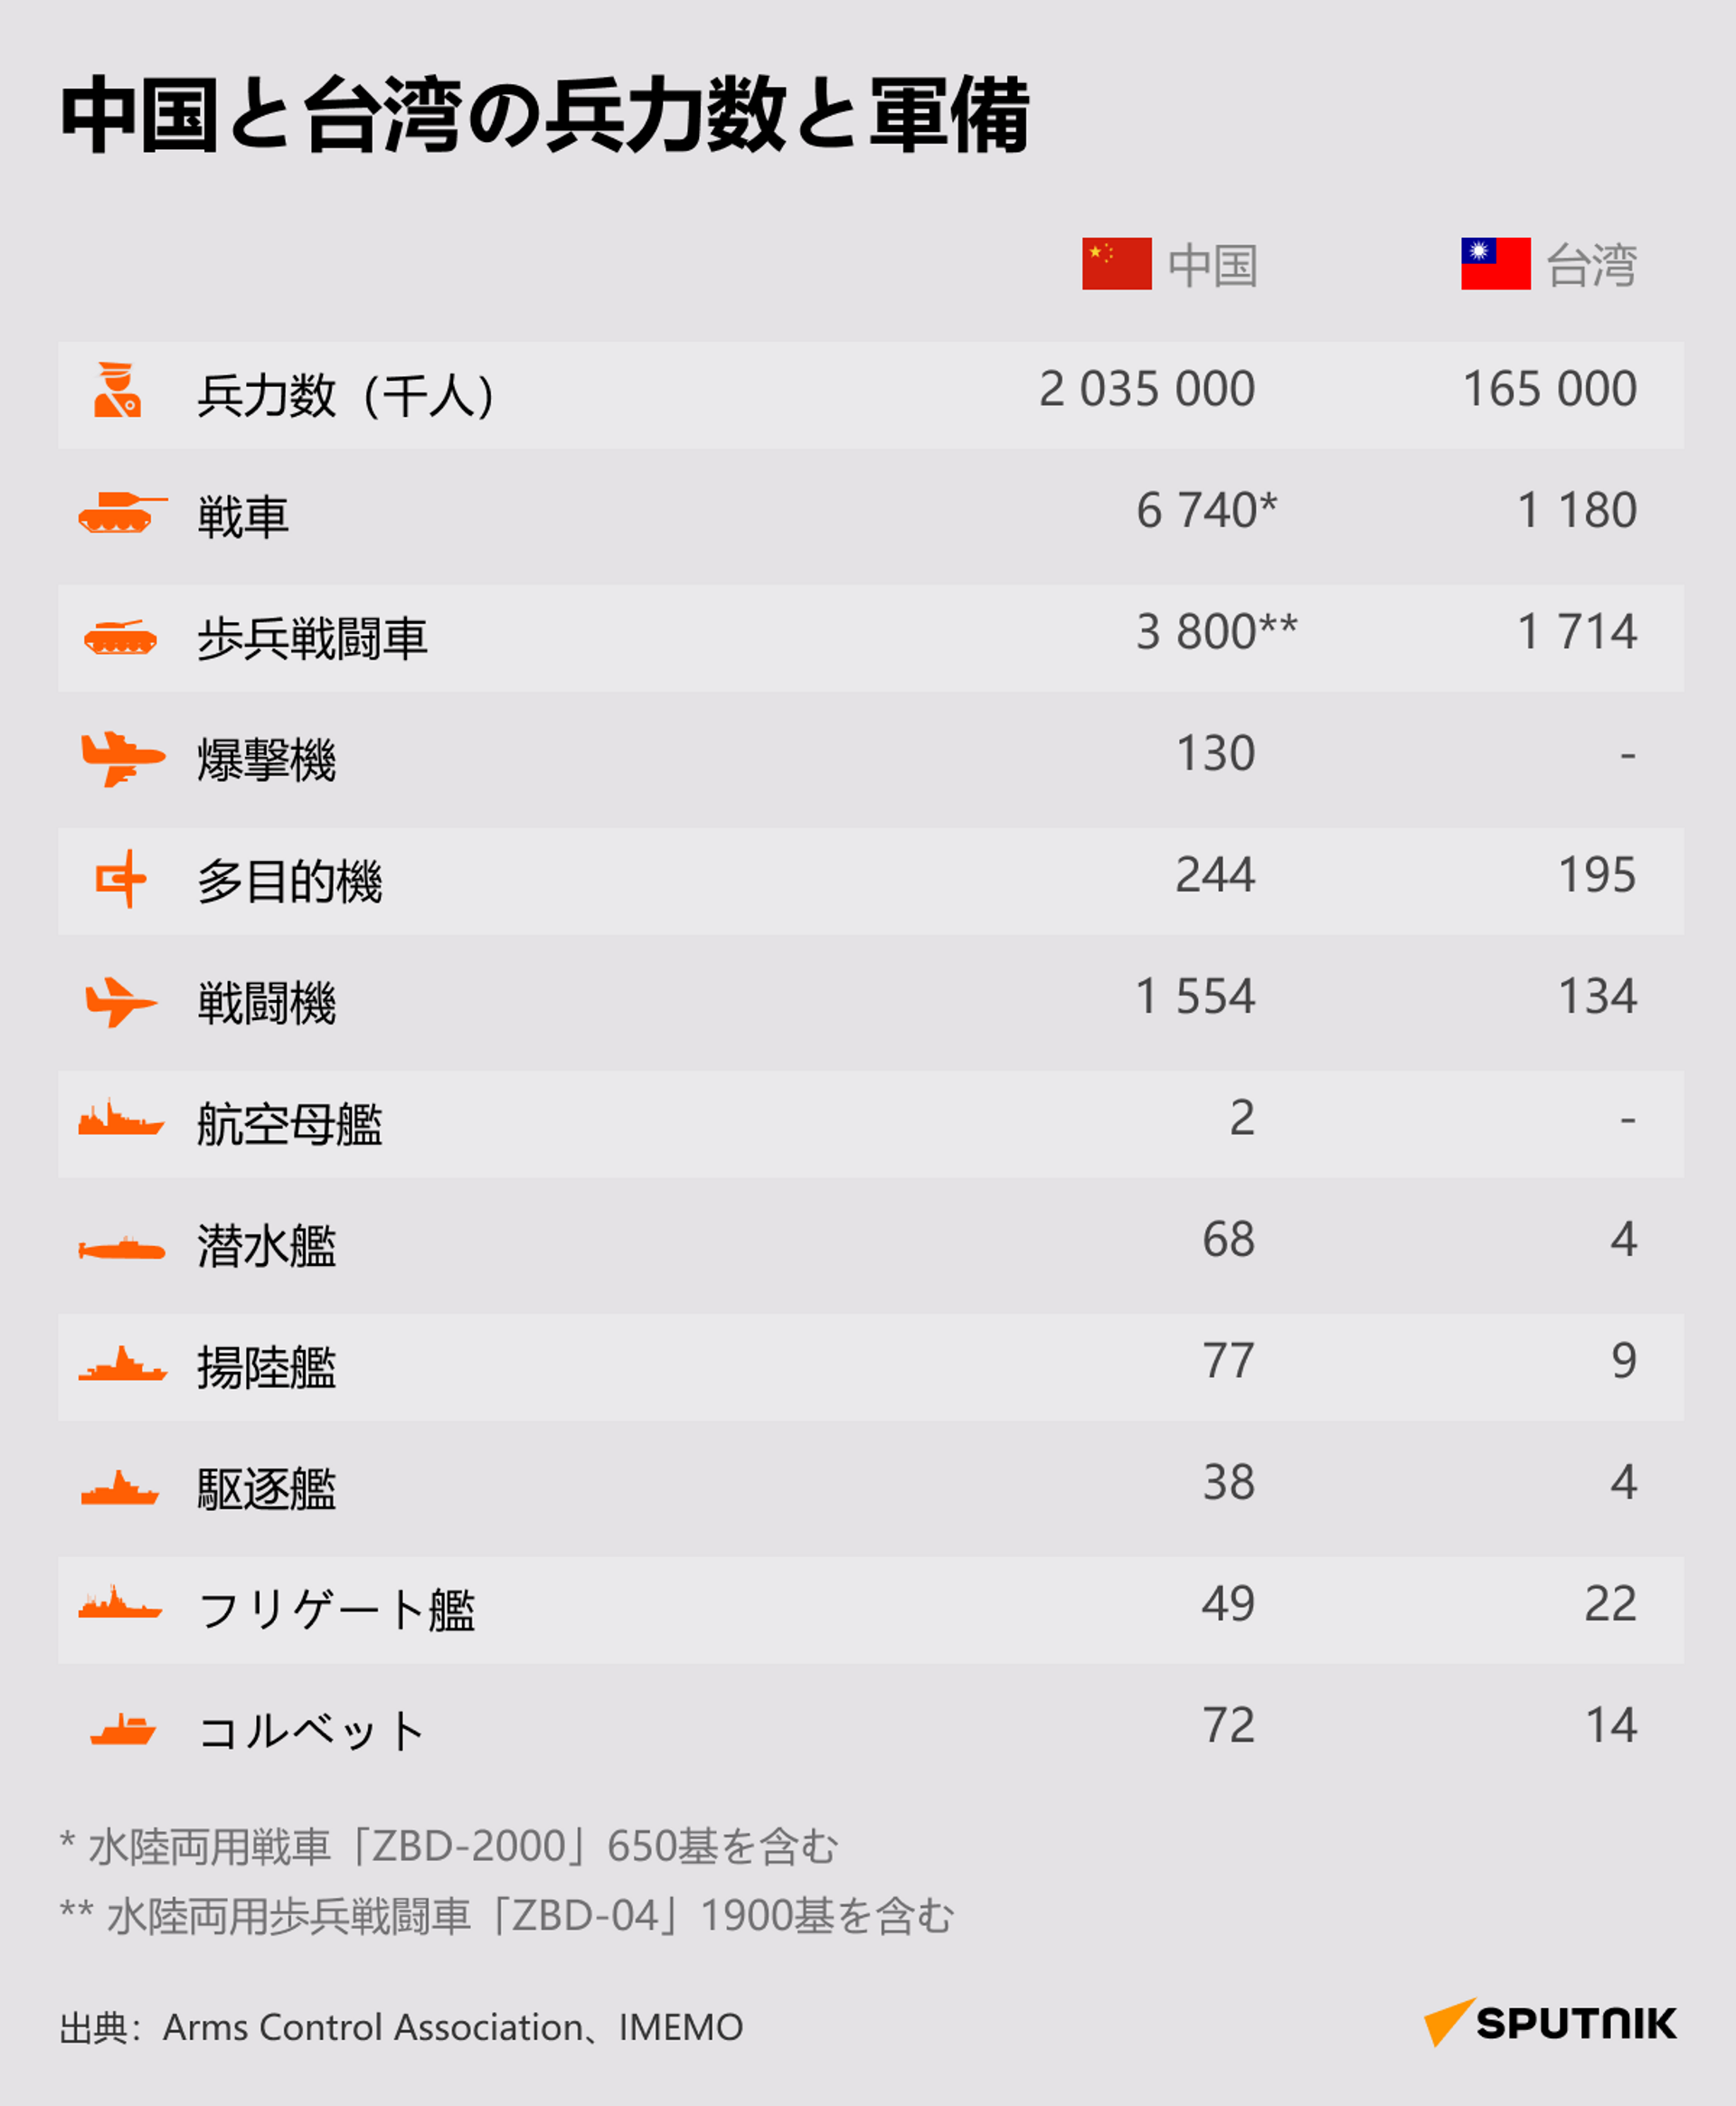 中国と台湾の兵力数と軍備 - Sputnik 日本, 1920, 01.04.2022